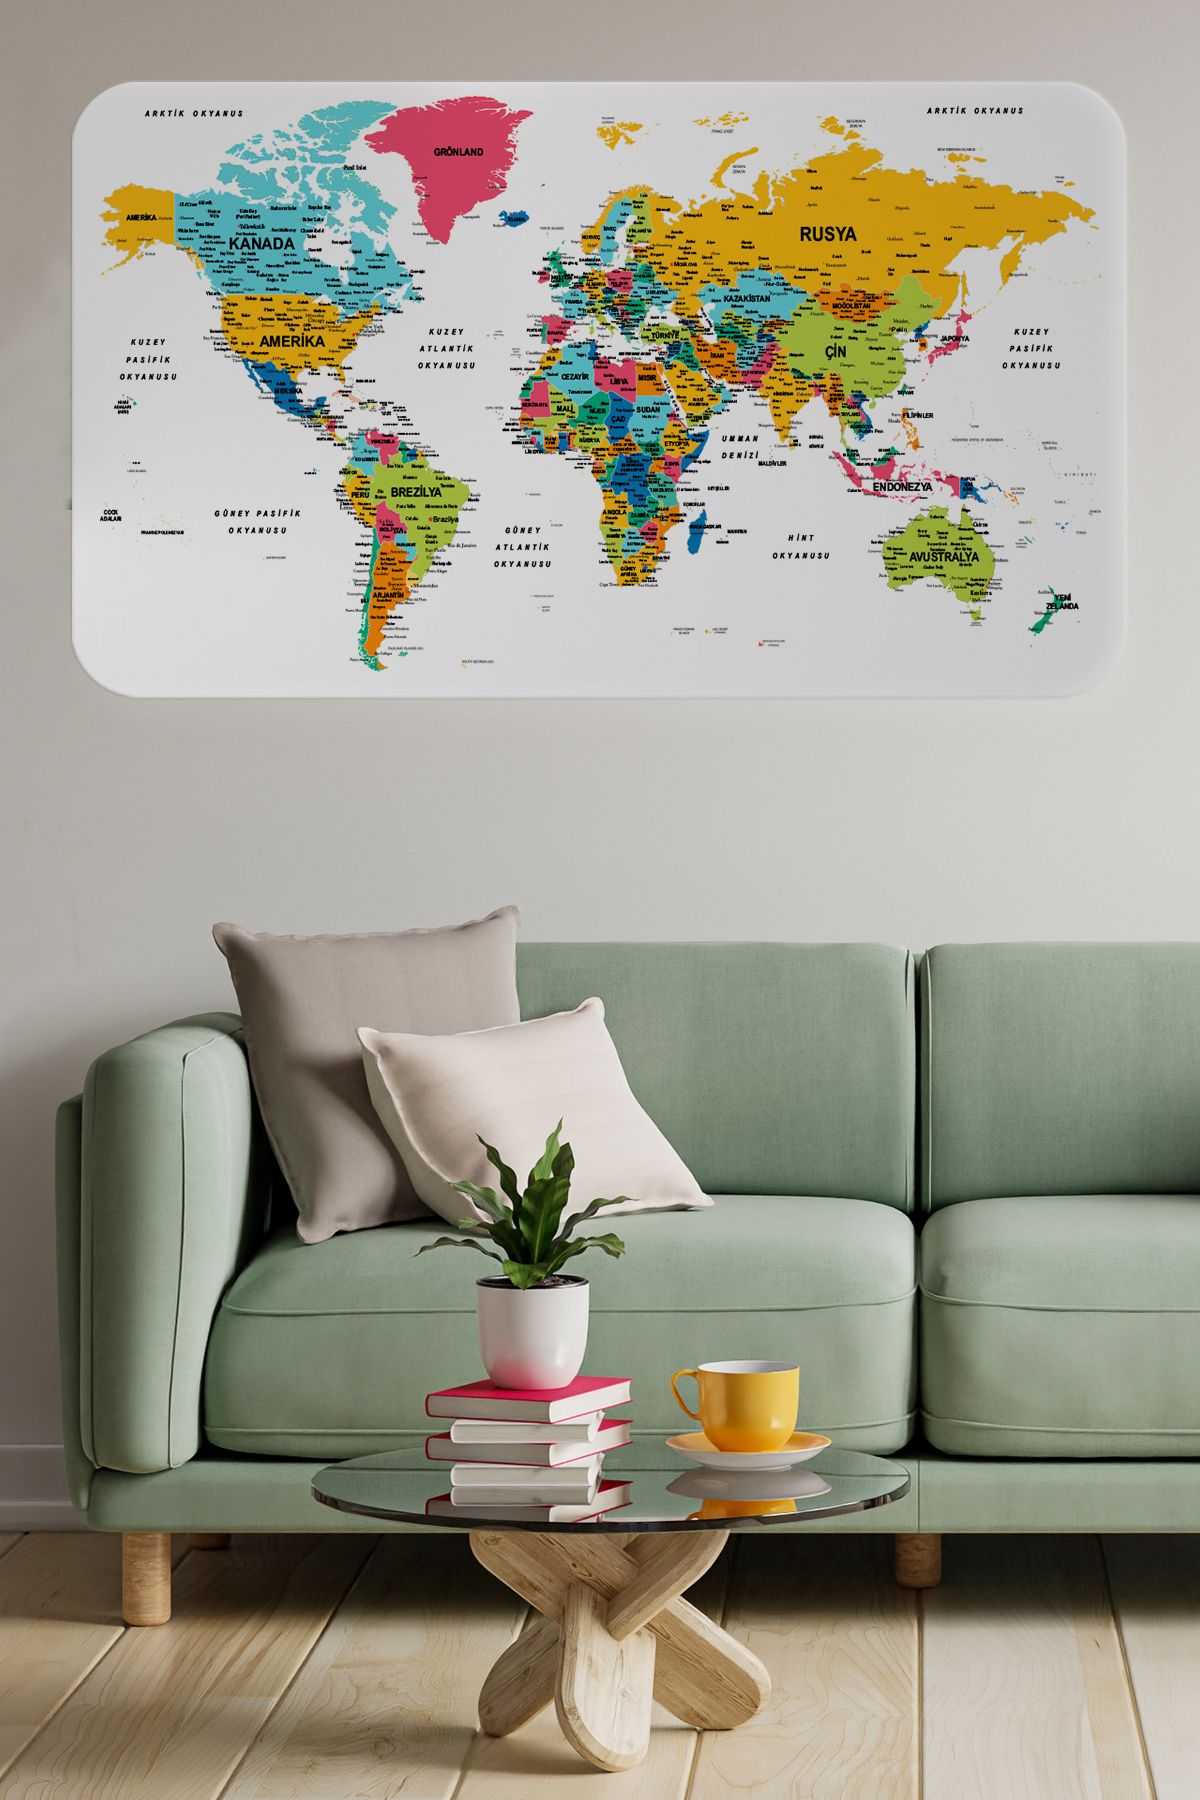 Harita Sepeti Türkçe Eğitici Ülke Ve Başkent Detaylı Atlası Dünya Haritası Duvar Sticker-3851